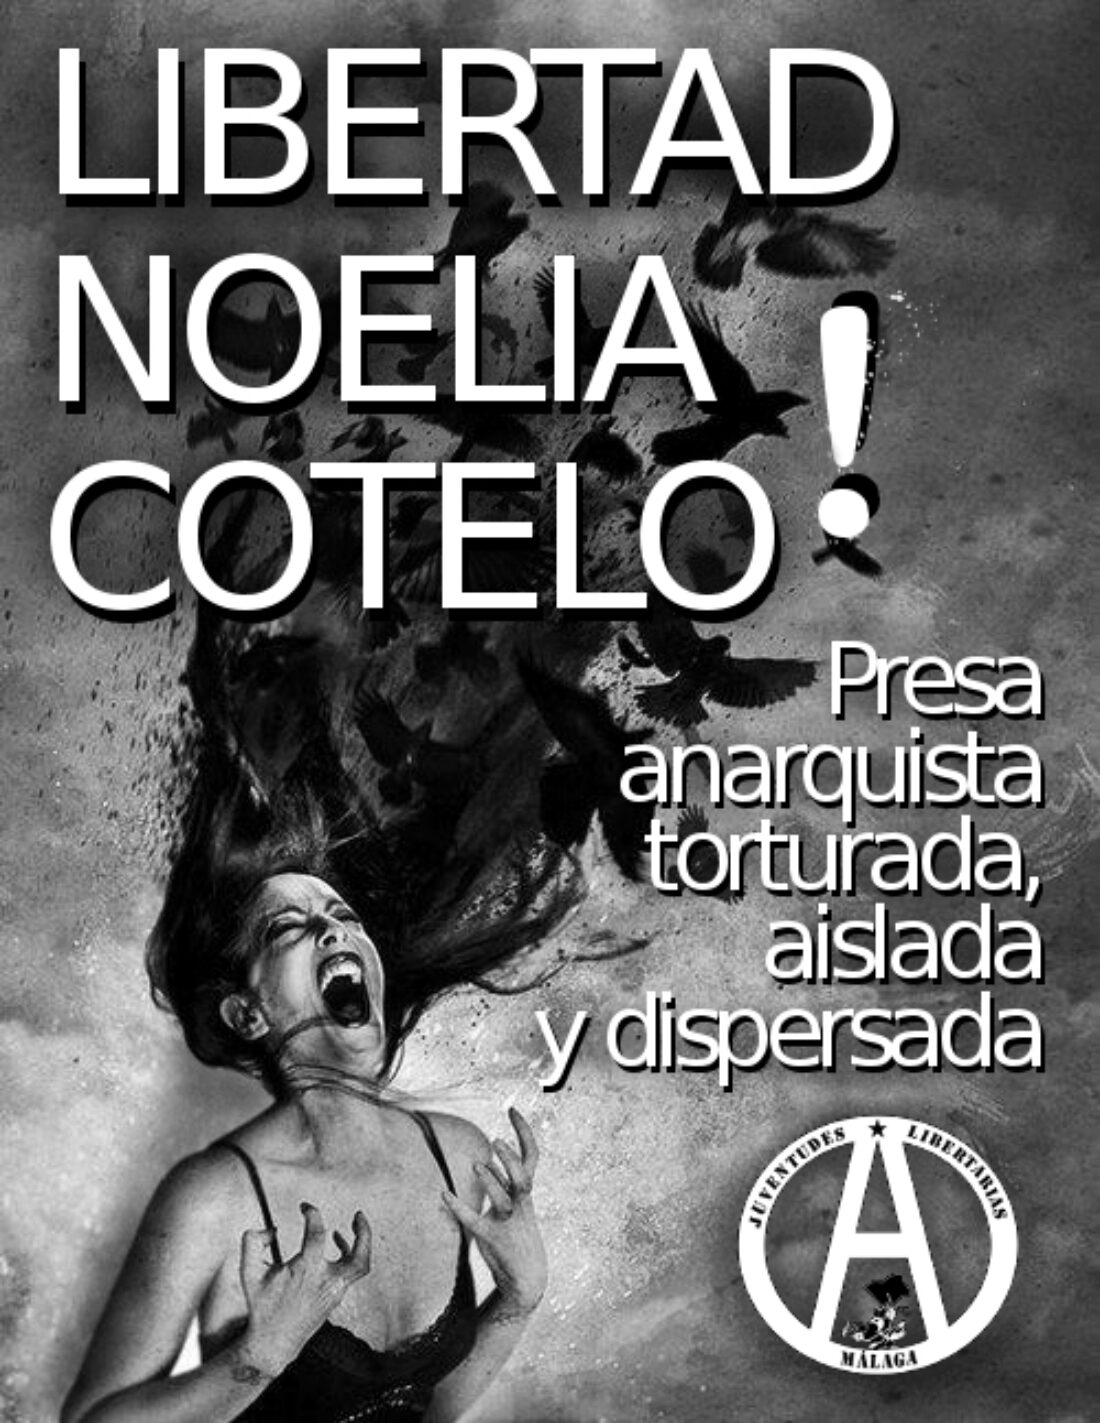 La Coordinadora Anti Represión de la Región de Murcia se suma a las movilizaciones en solidaridad con Noelia Cotelo